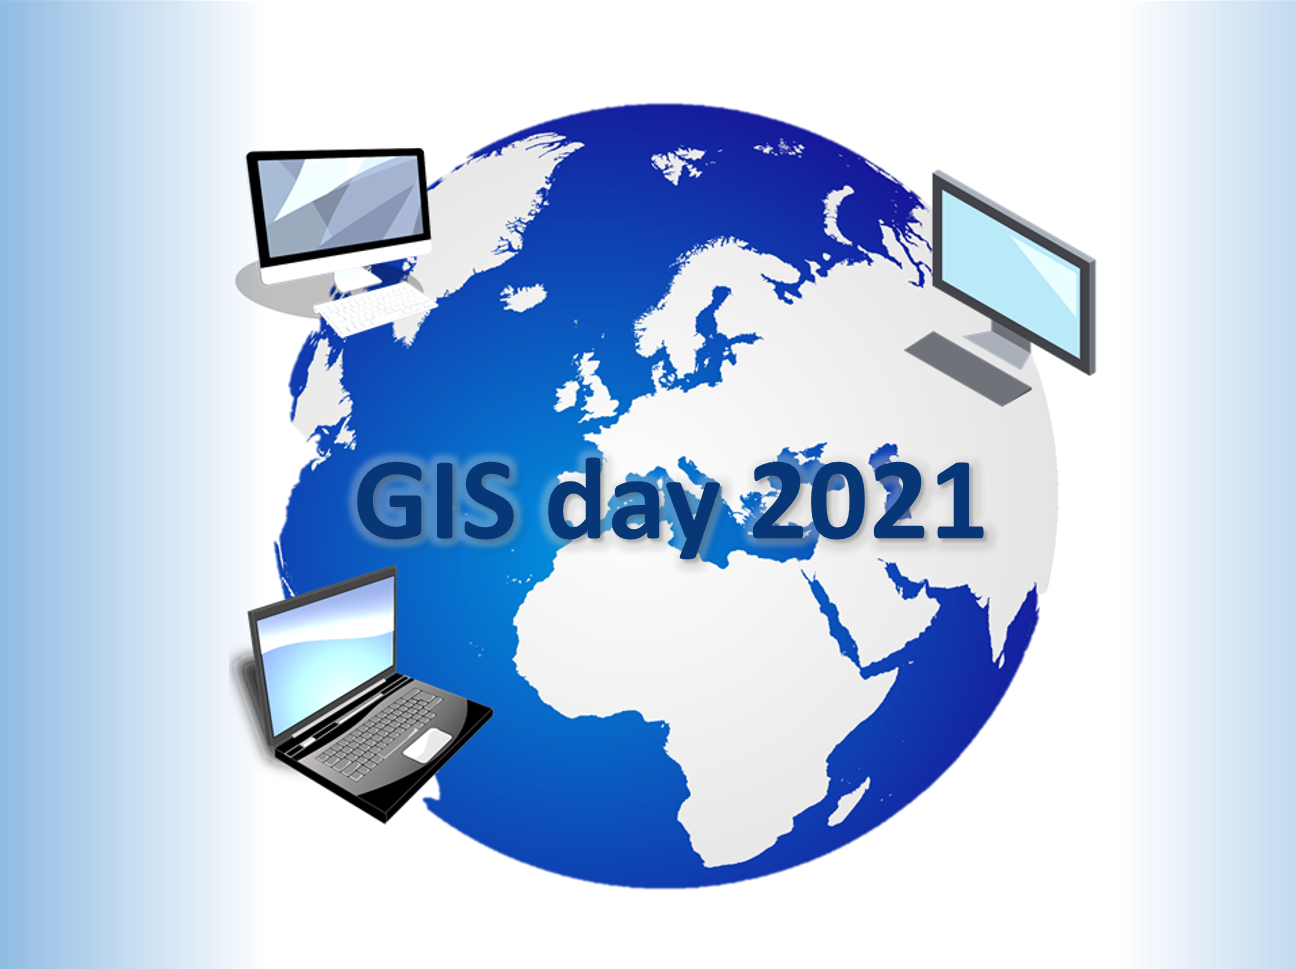 Napis GIS day 2021 na tle kuli ziemskiej, otoczony przez 3 komputery.